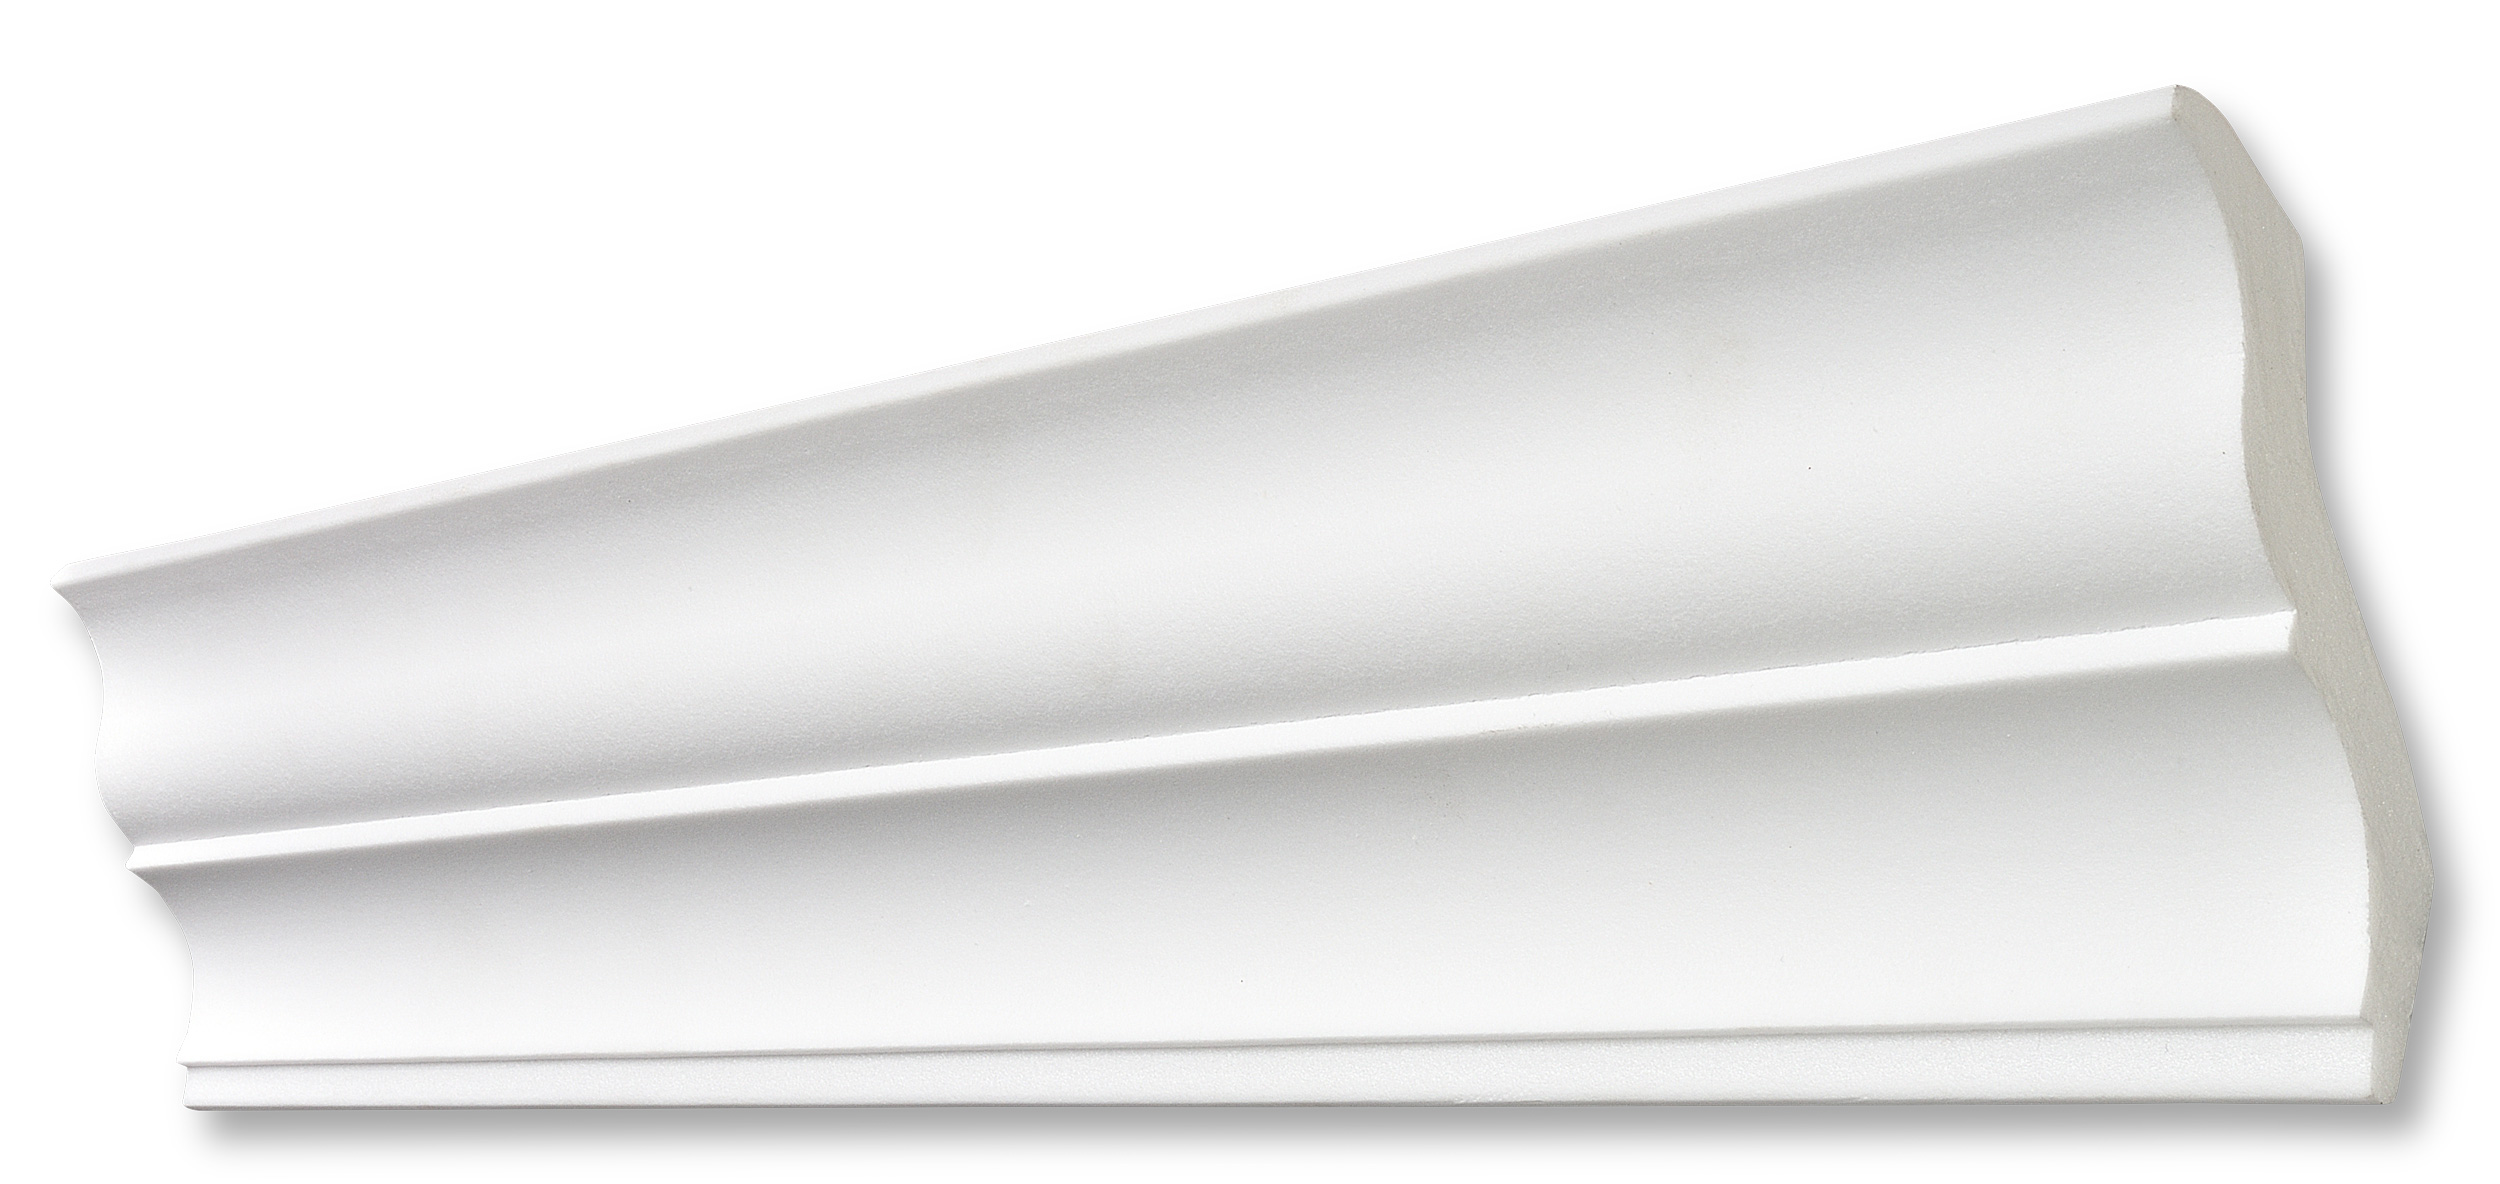 Decosa Zierprofil S110, weiß, 95 x 95 mm, Länge: 2 m